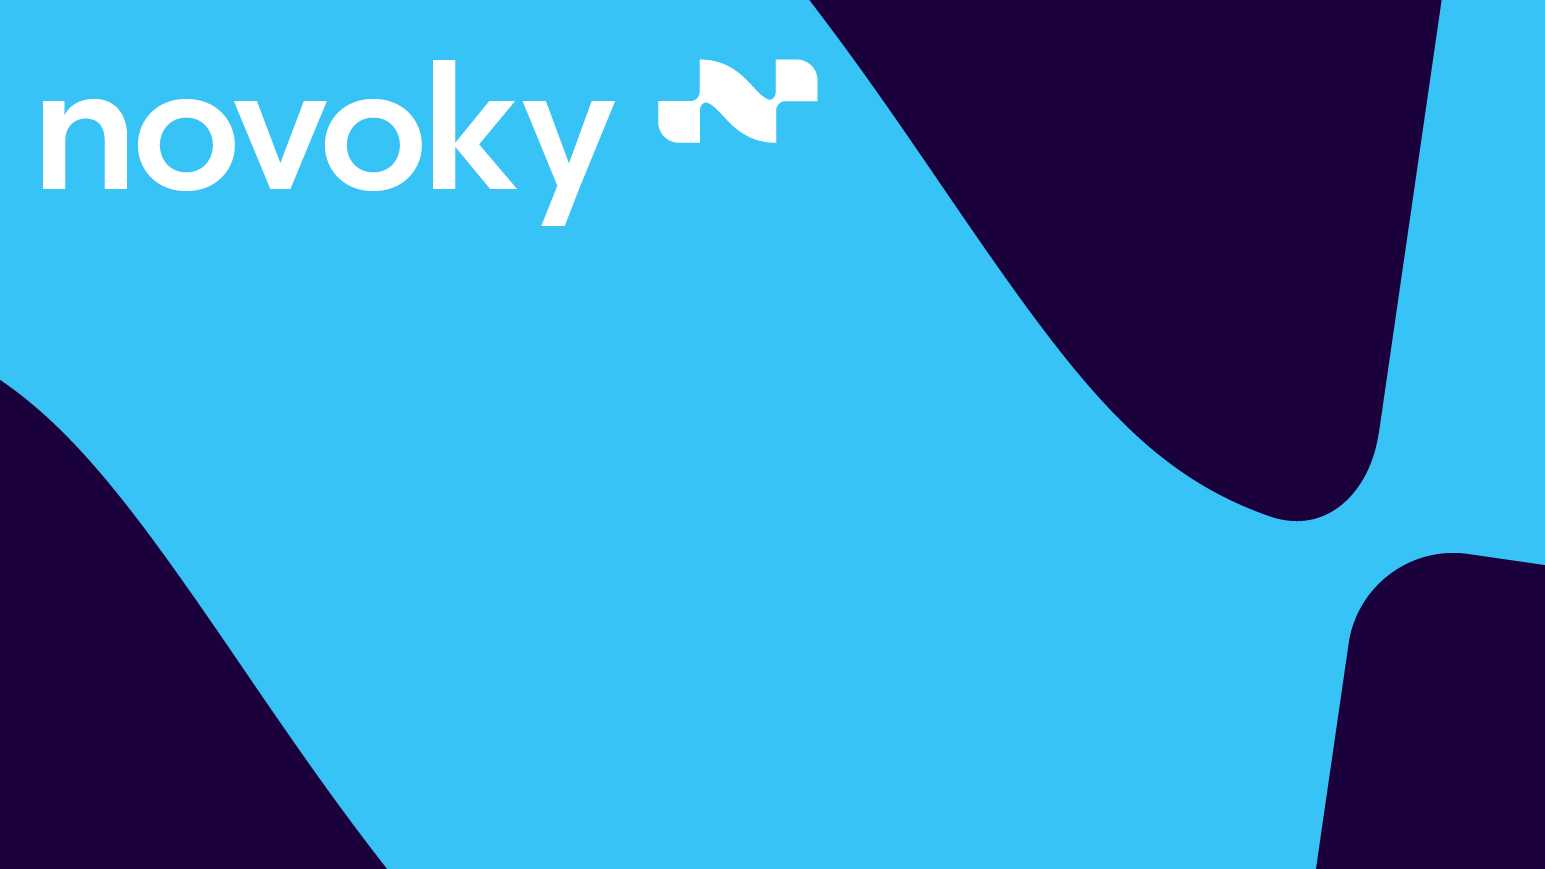 novoky logo on blue background with the novoky pattern